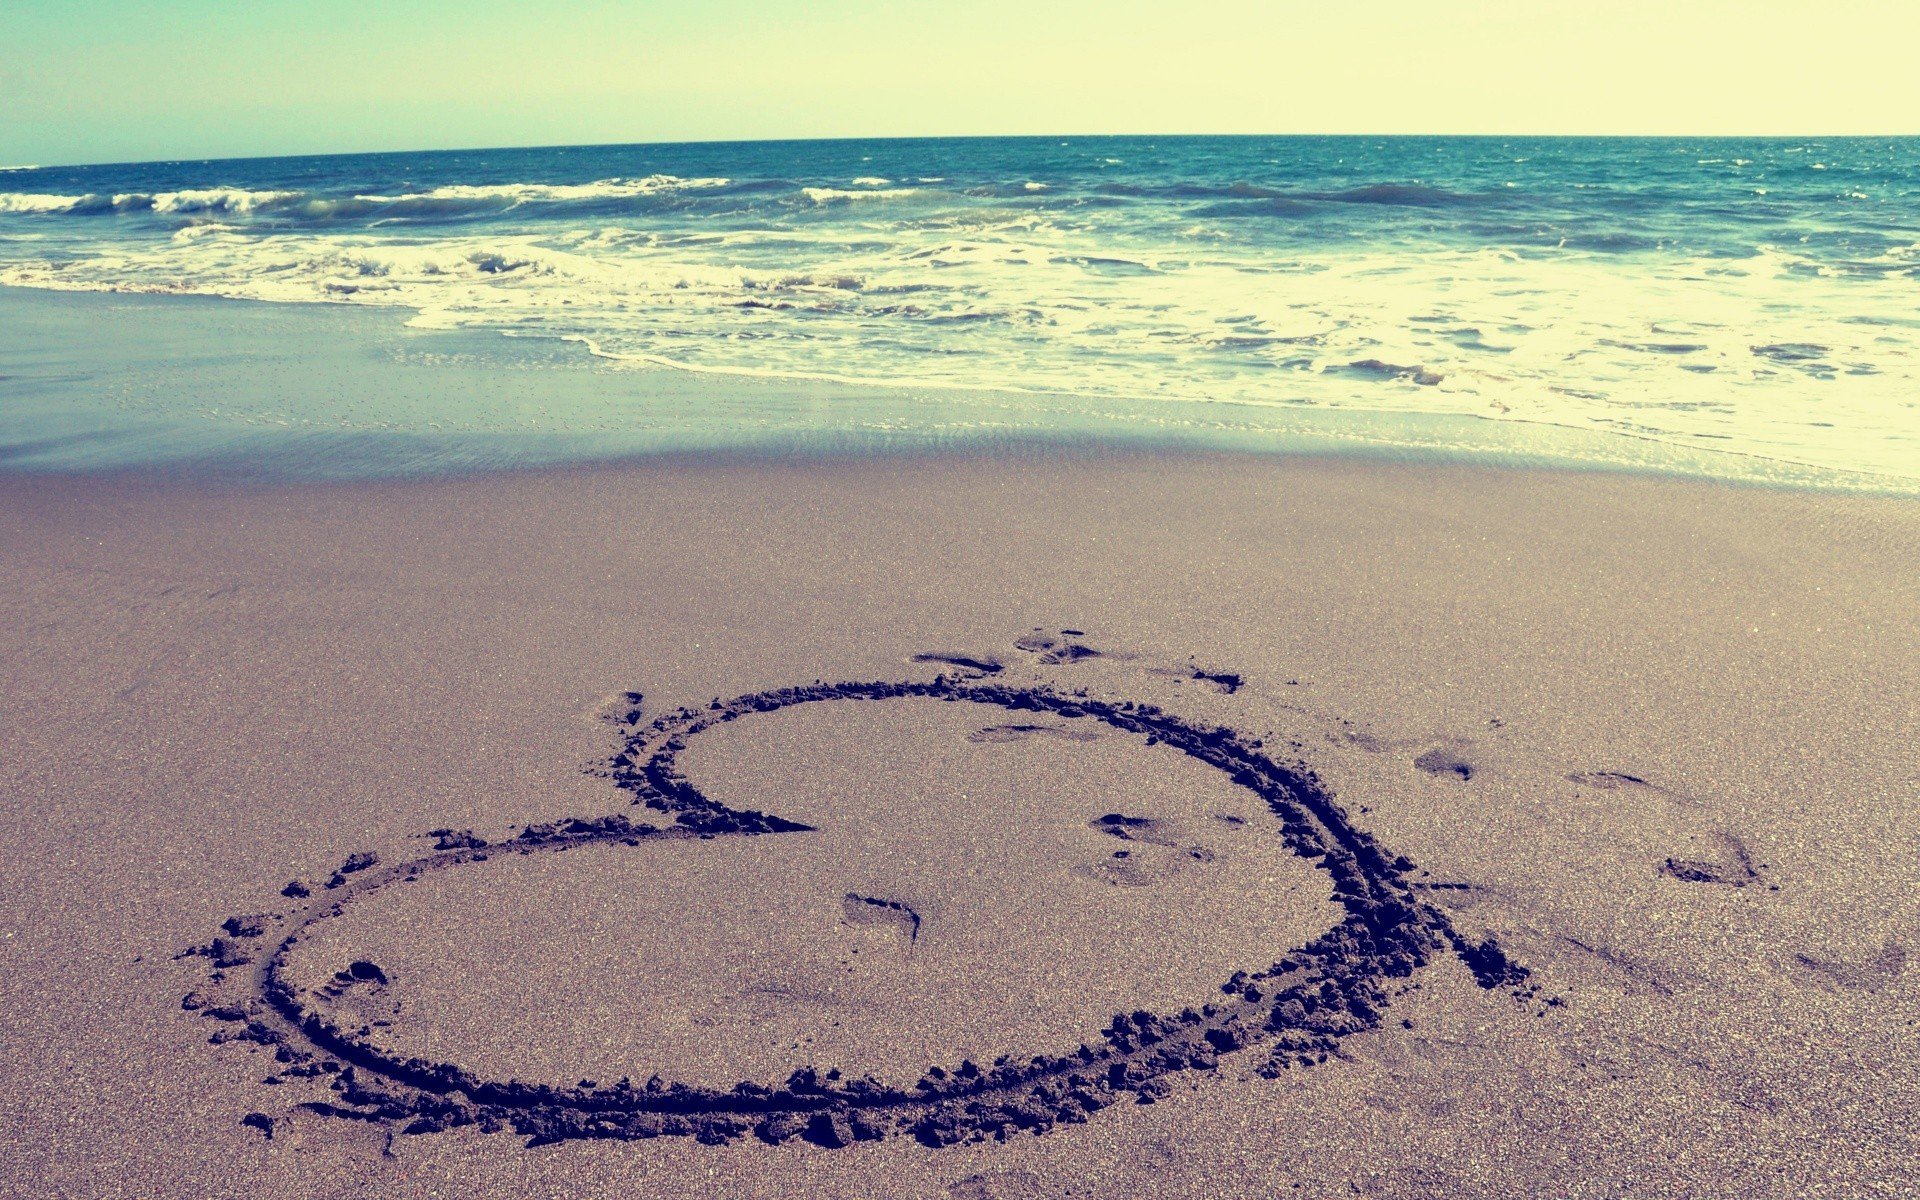 Сердце на песке фото у моря